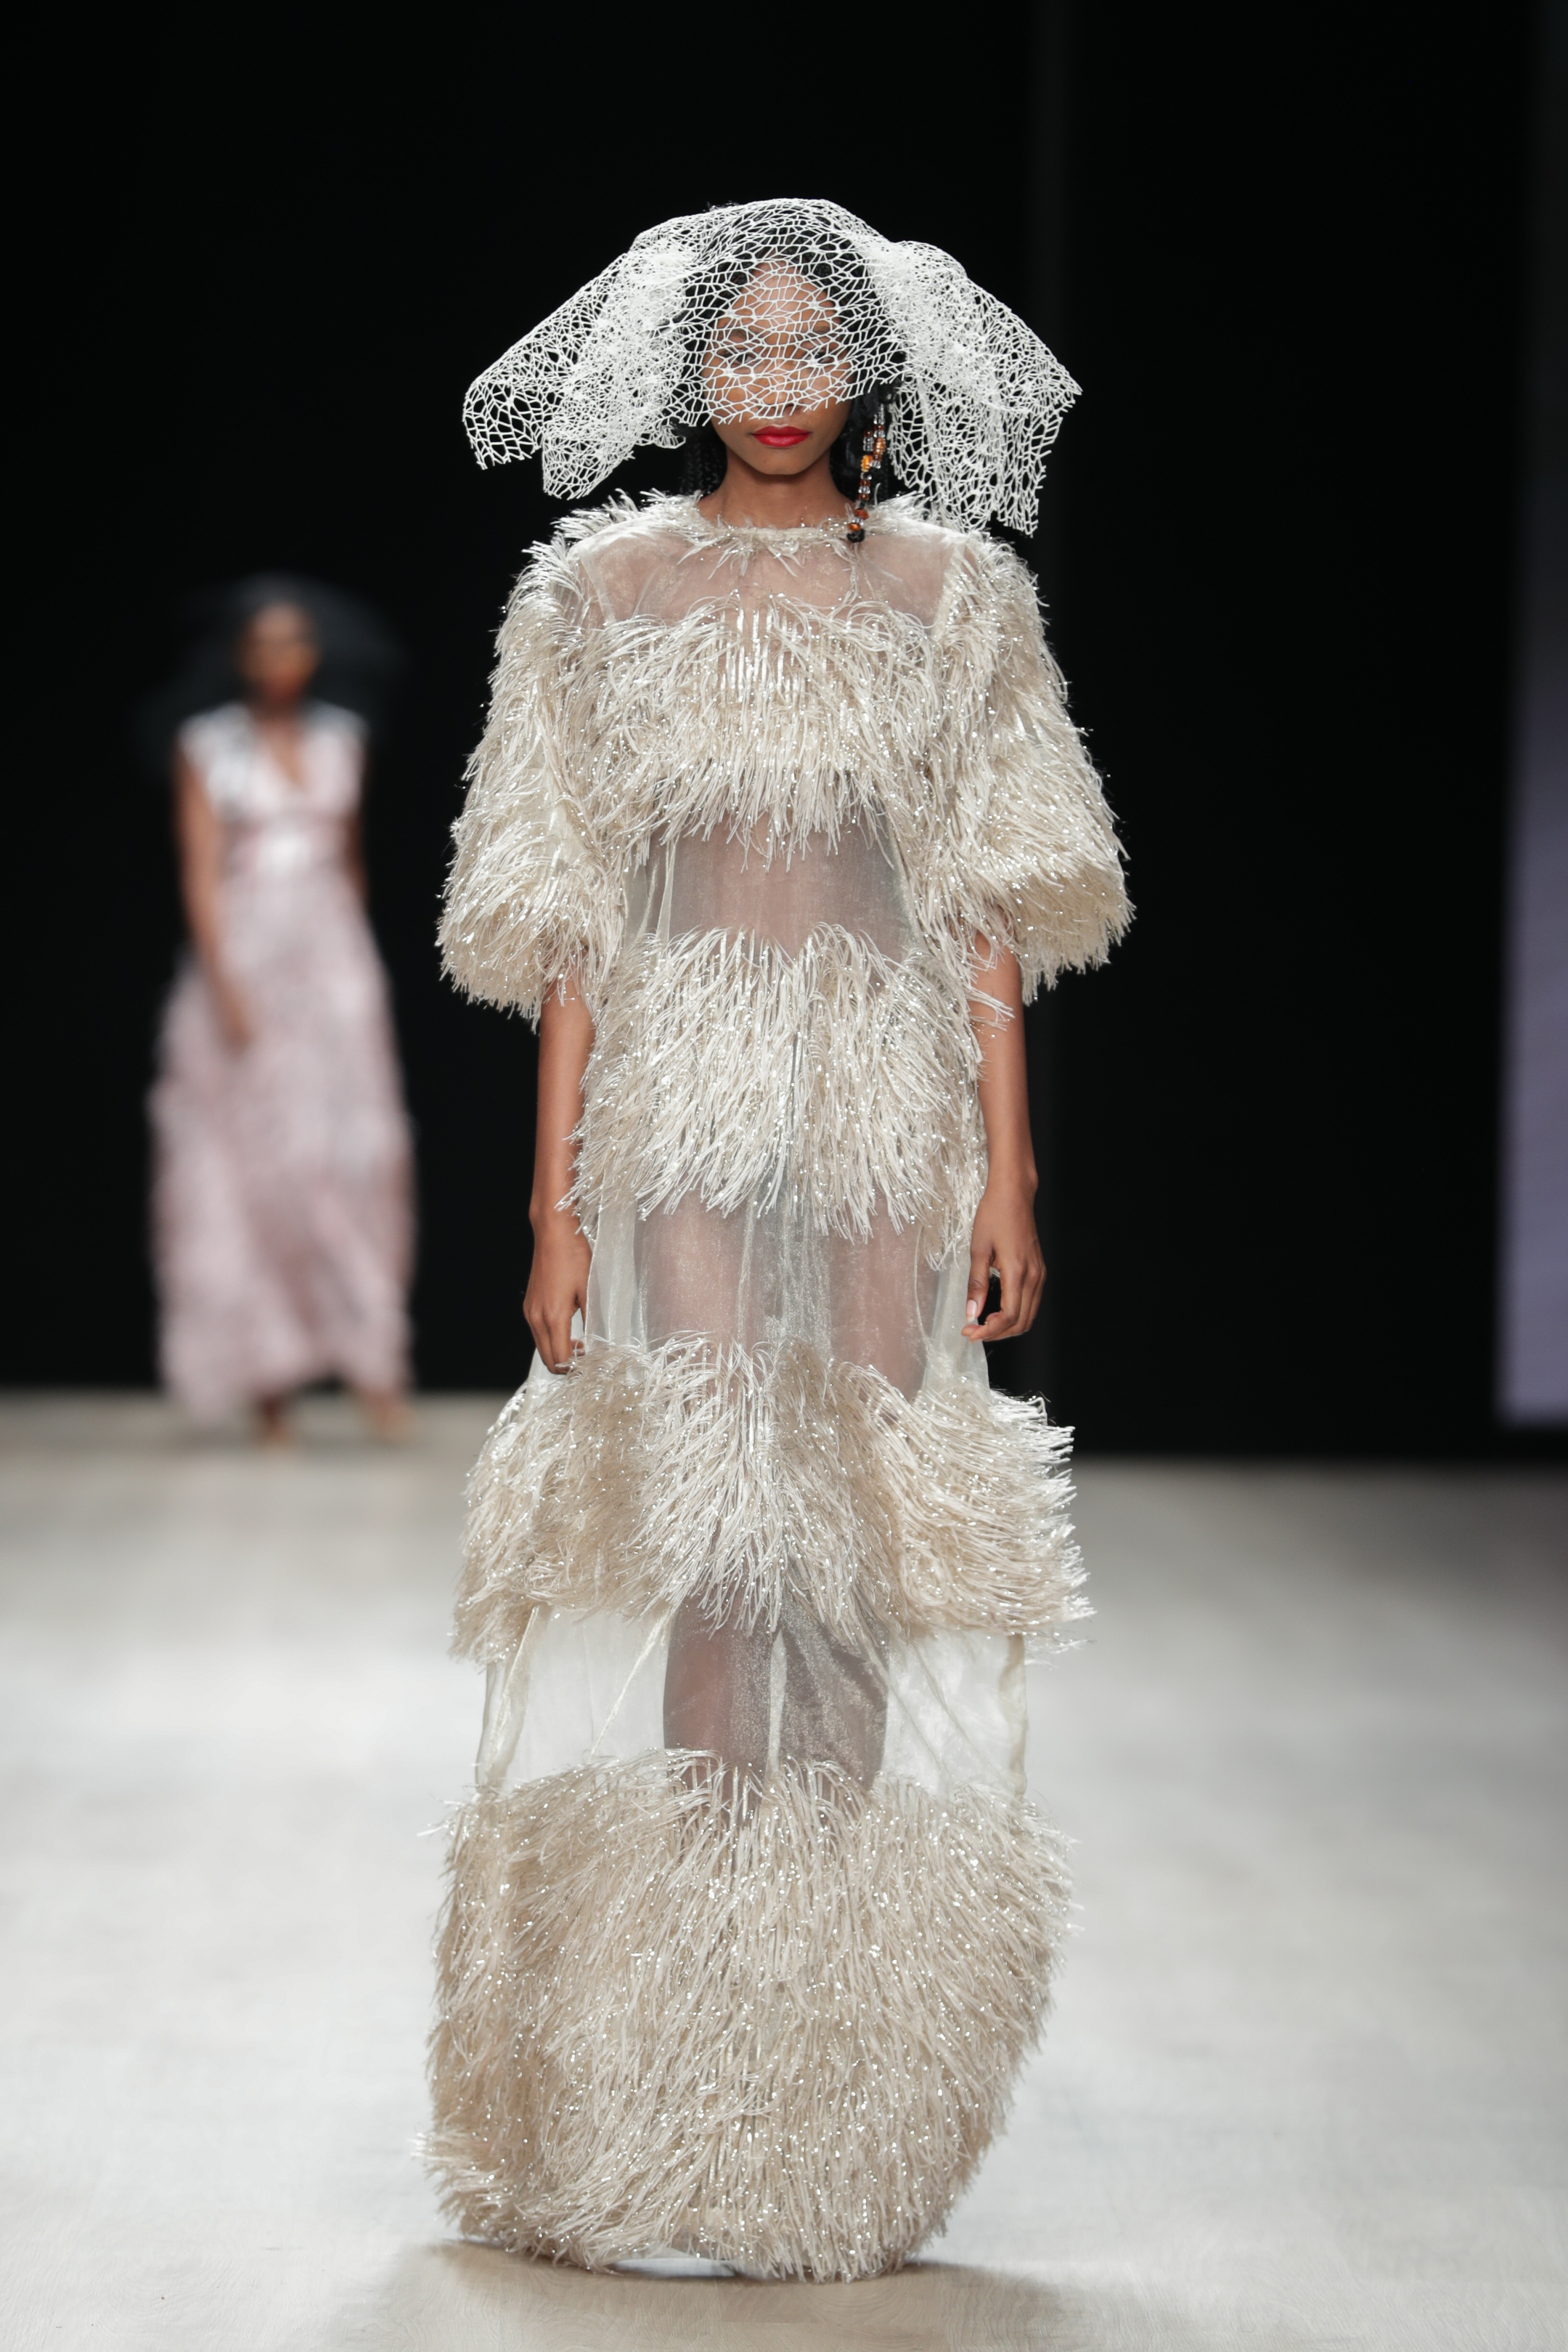 ARISE Fashion Week 2019 – Runway Day 2: Lanre Da Silva Ajayi | BellaNaija